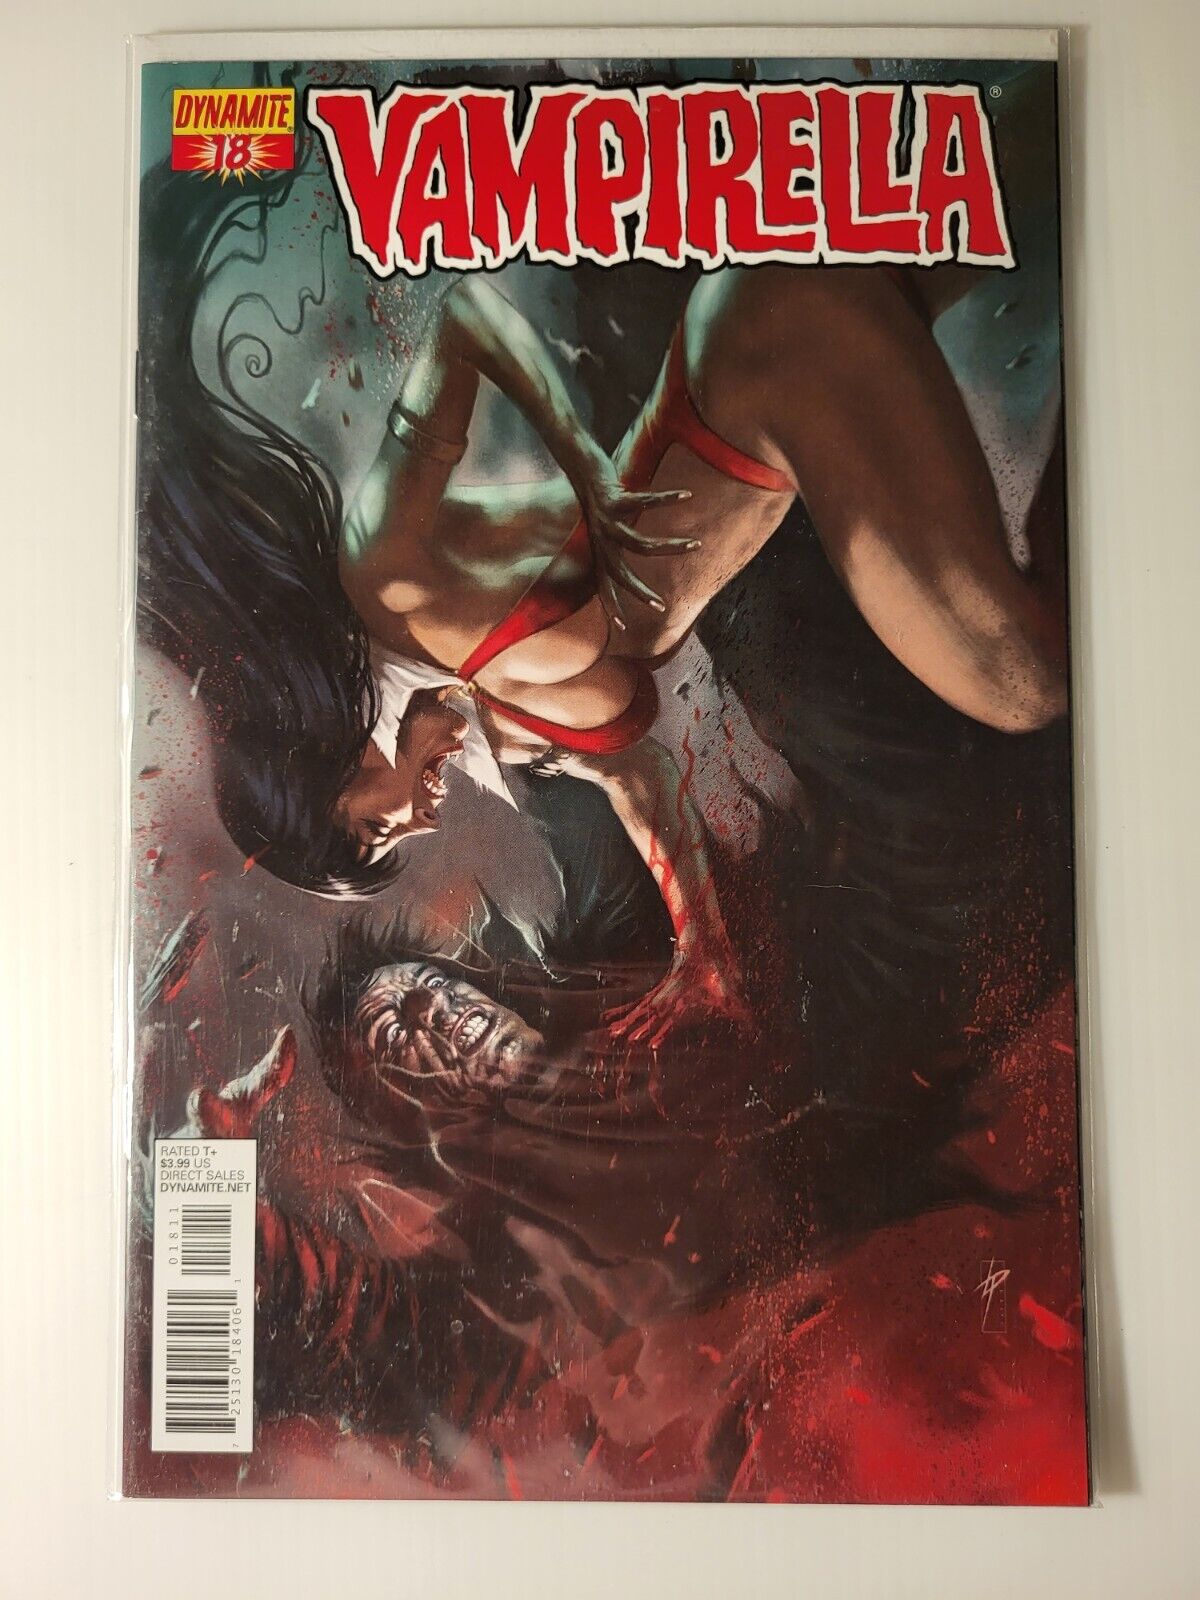 Vampirella #18 Parrillo Variant Cover HTF (Dynamite Comics) VF/NM